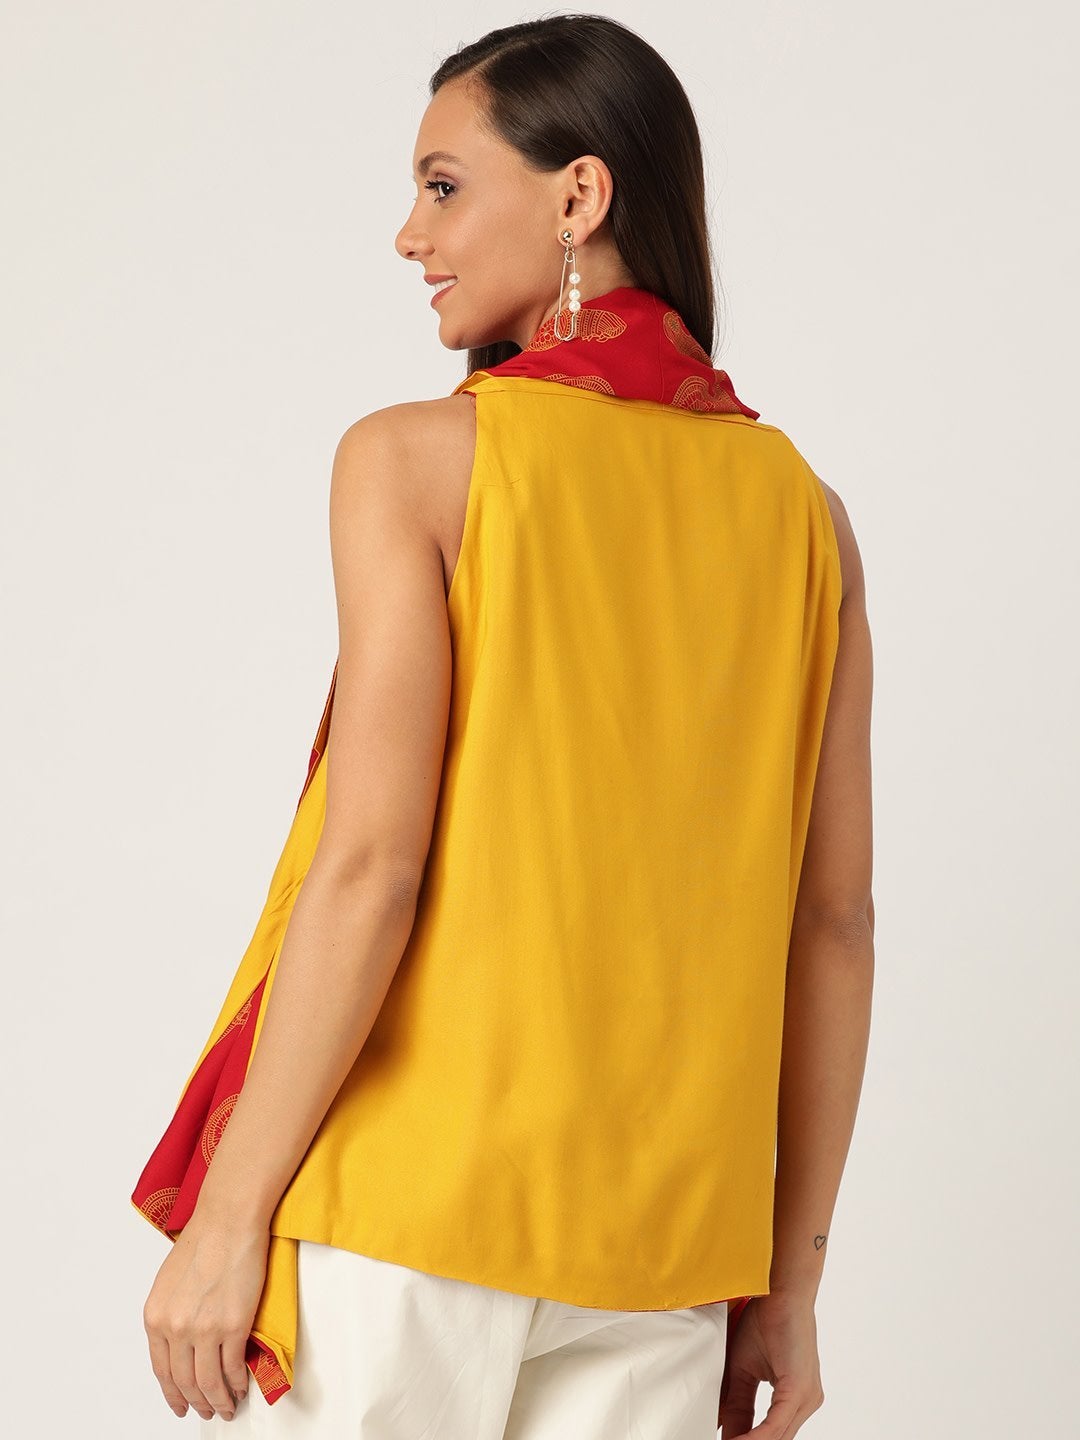 Women's Reversible Shrug  Bird Print In Red &Yellow - InWeave